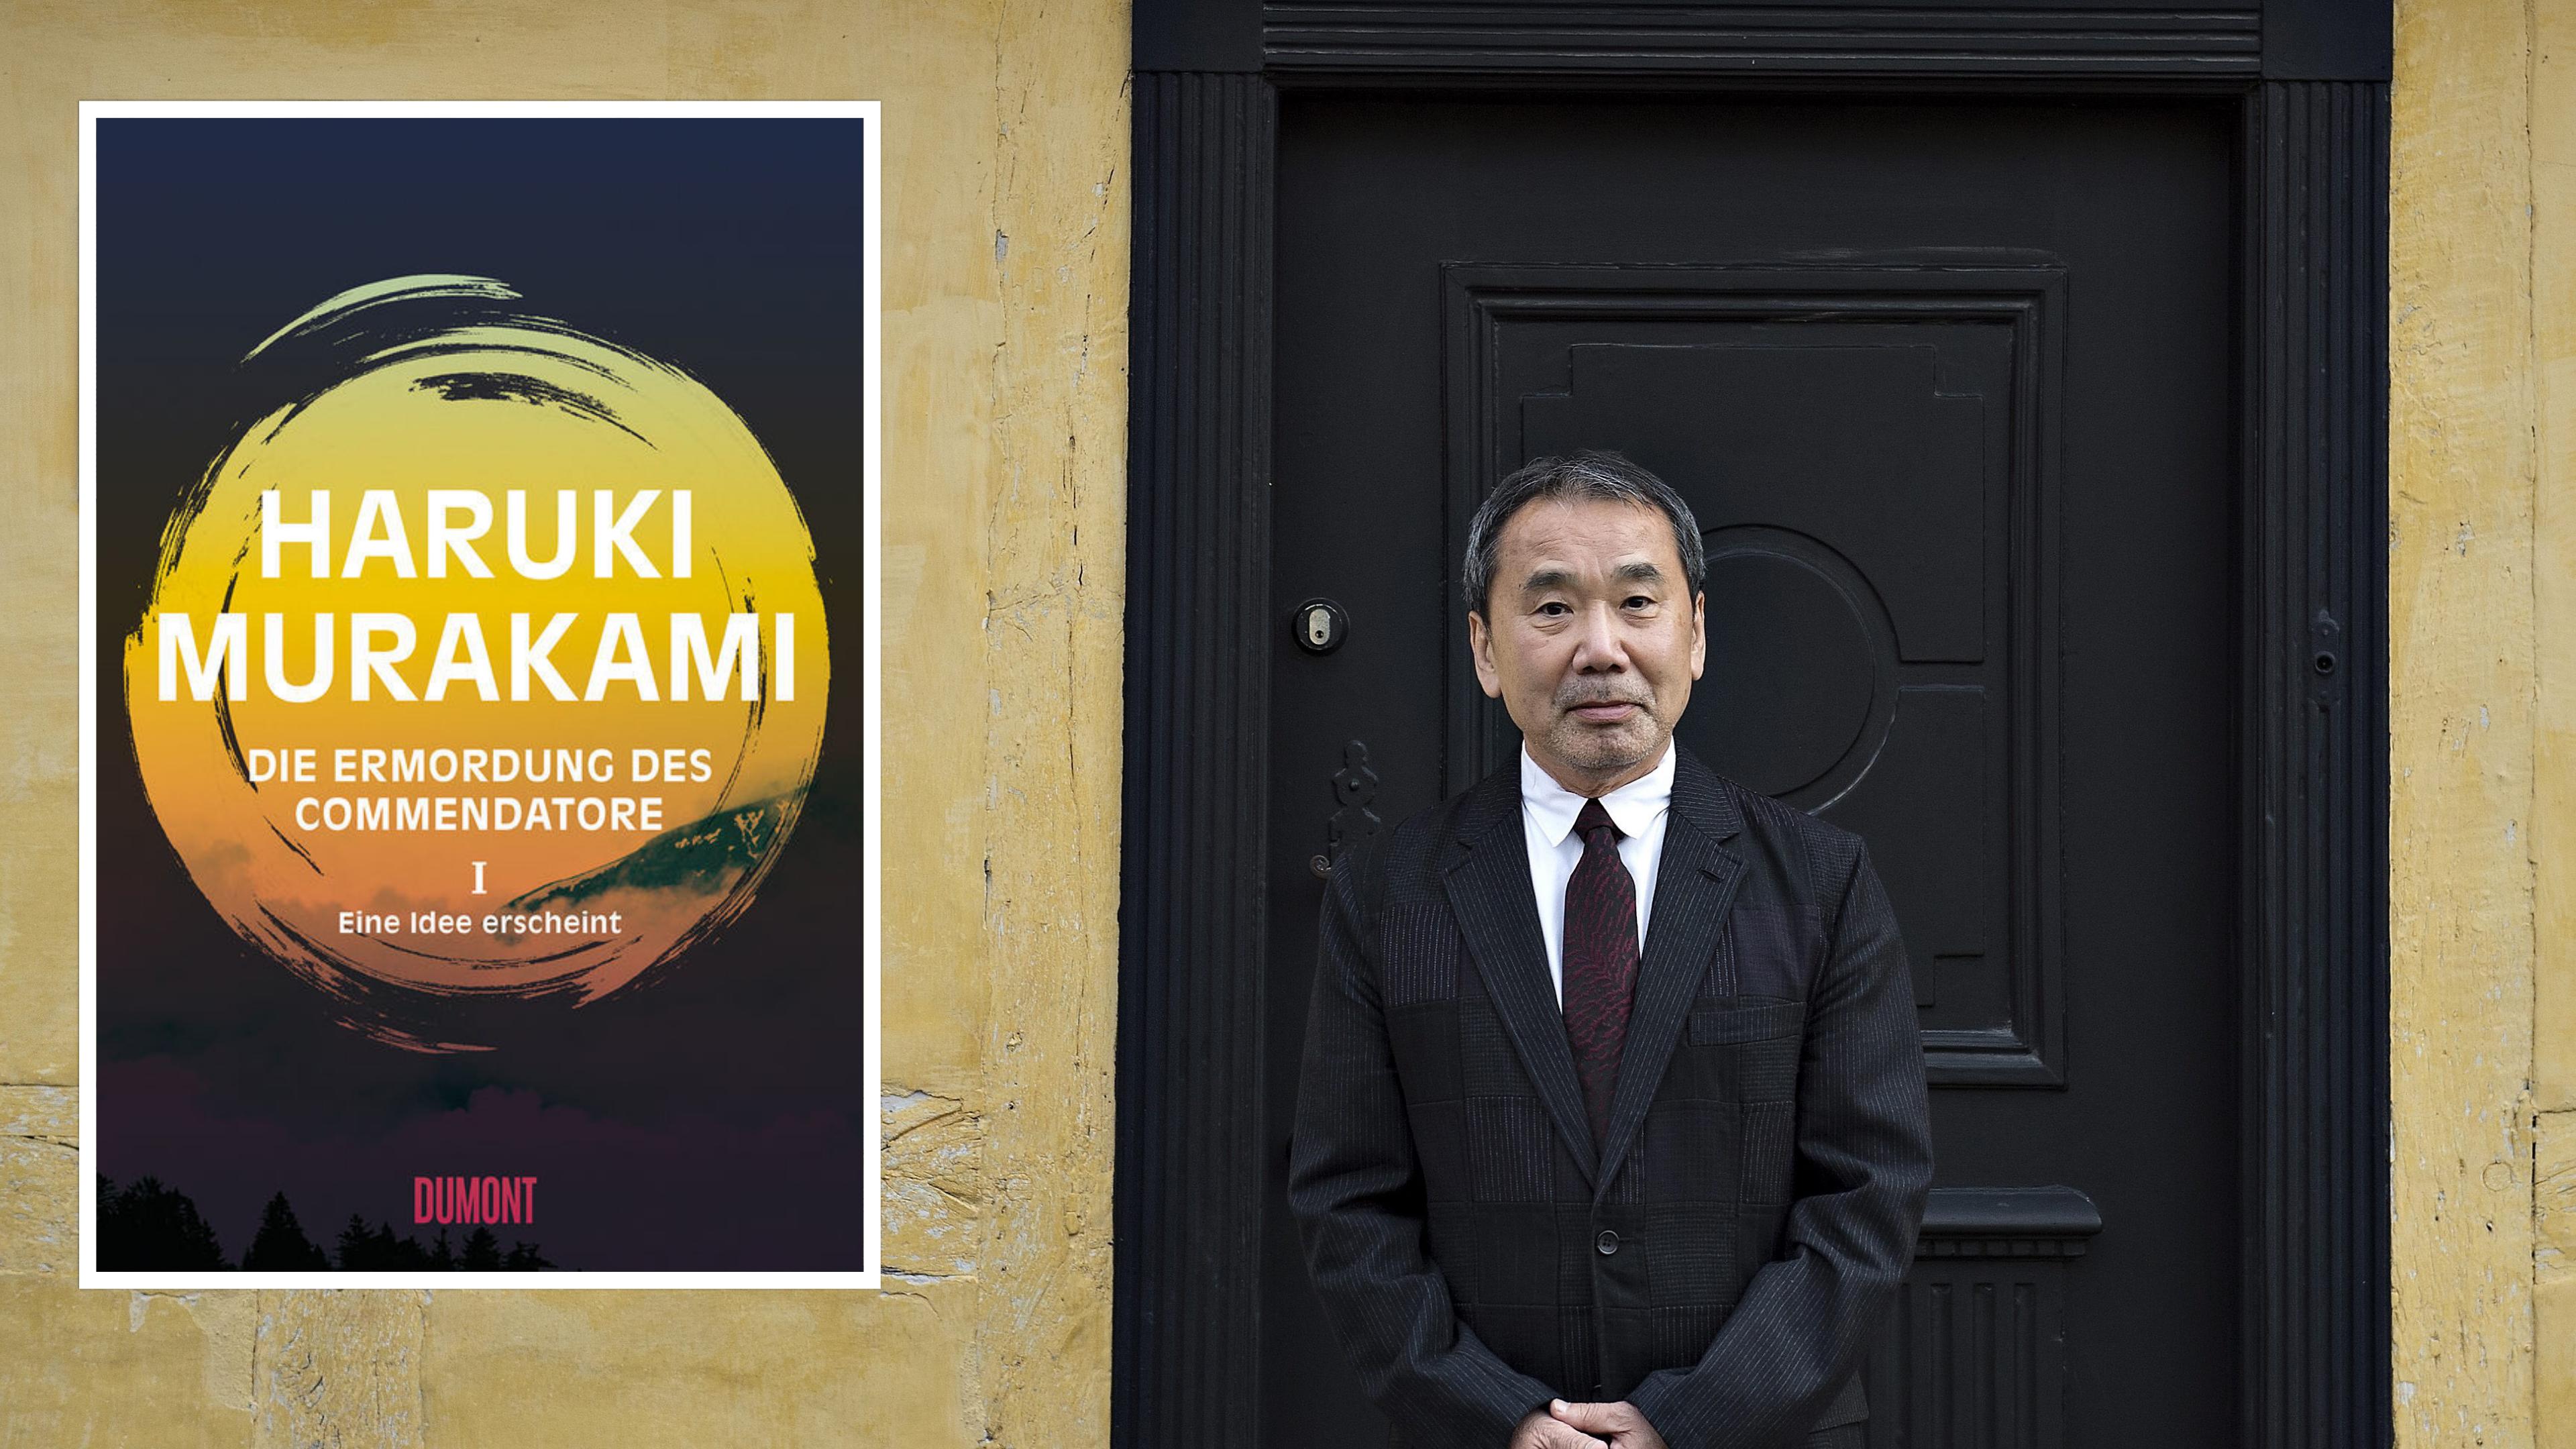 Haruki Murakami ist der Meister des Magischen Realismus